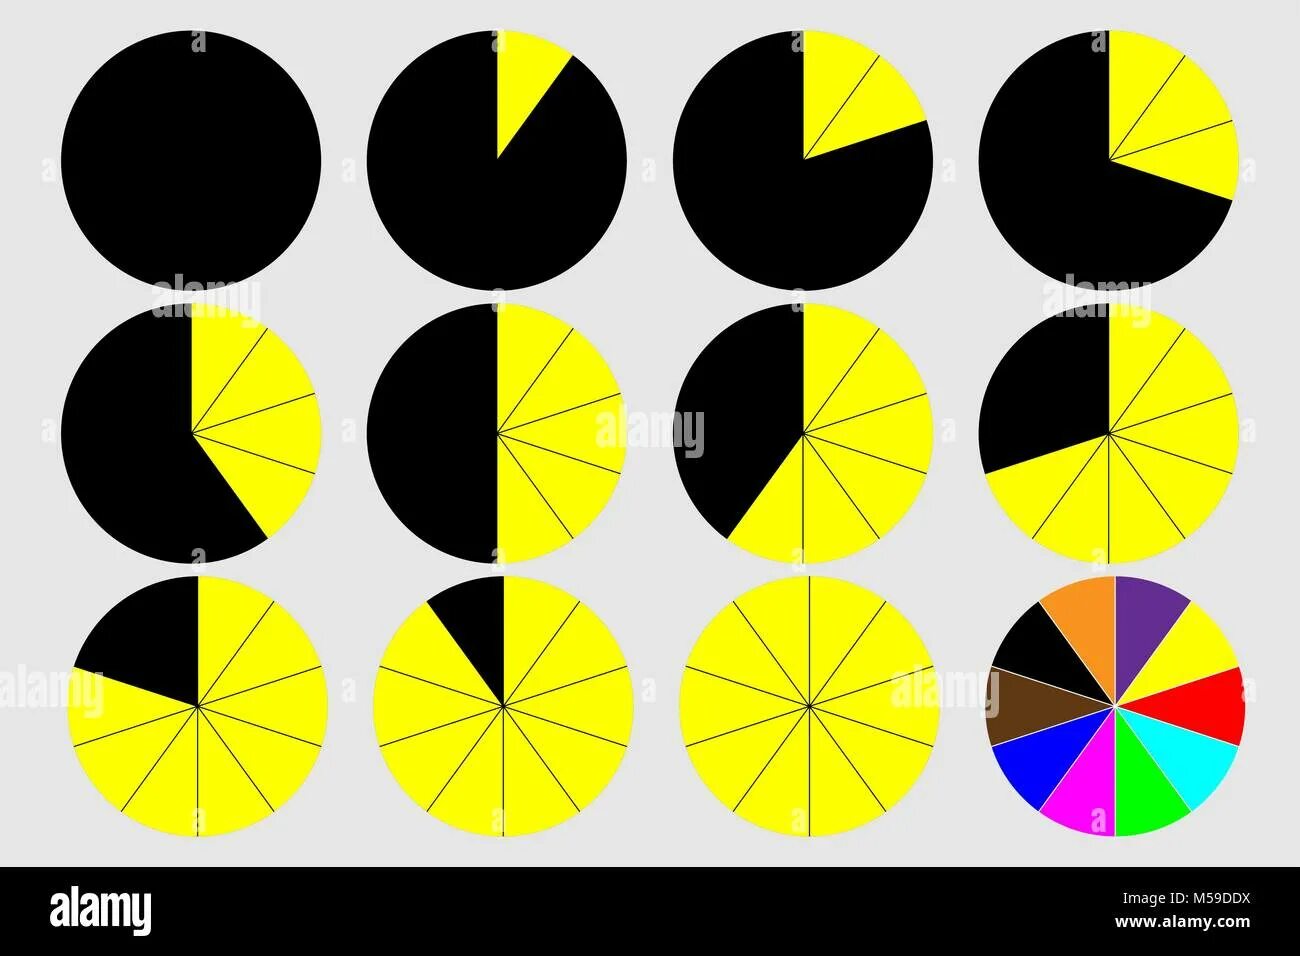 20 30 40 50 60 70. Желтый круглый график. Векторная Графика круги черно желтые. Число в круге 10, 20, 30, 40, 50, 60, 70, 80, 90.